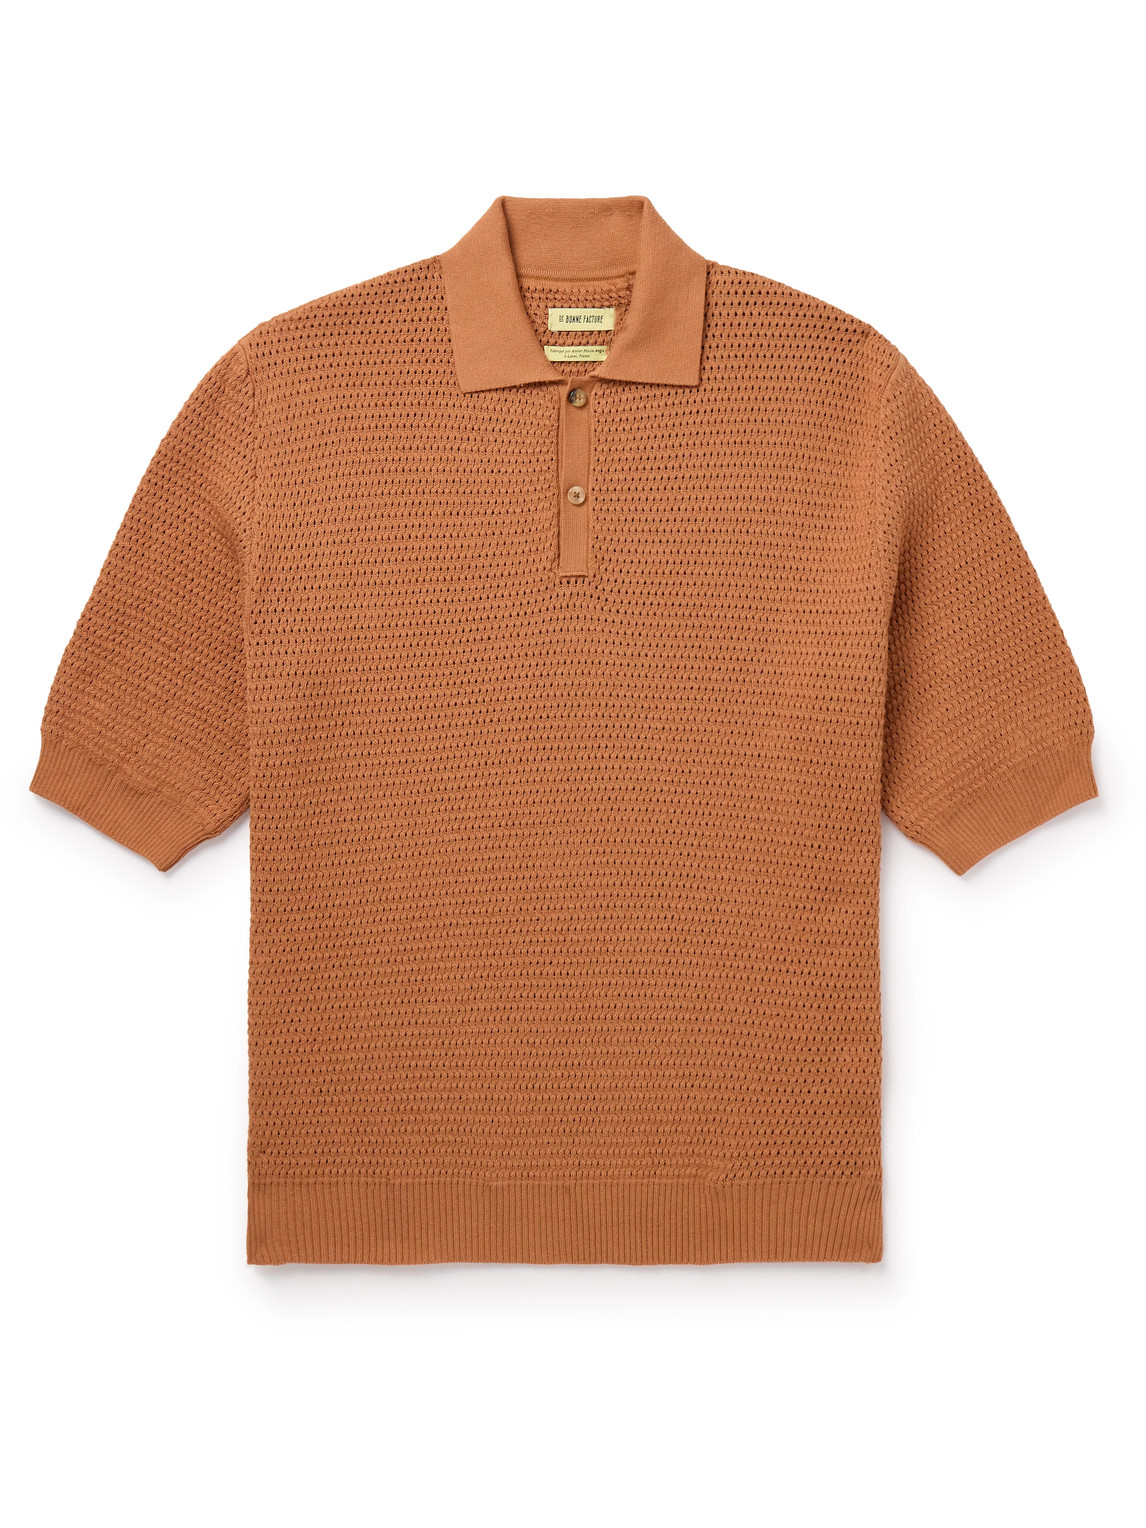 De Bonne Facture - Honeycomb Organic Cotton Polo Shirt - Men - Orange - M von De Bonne Facture